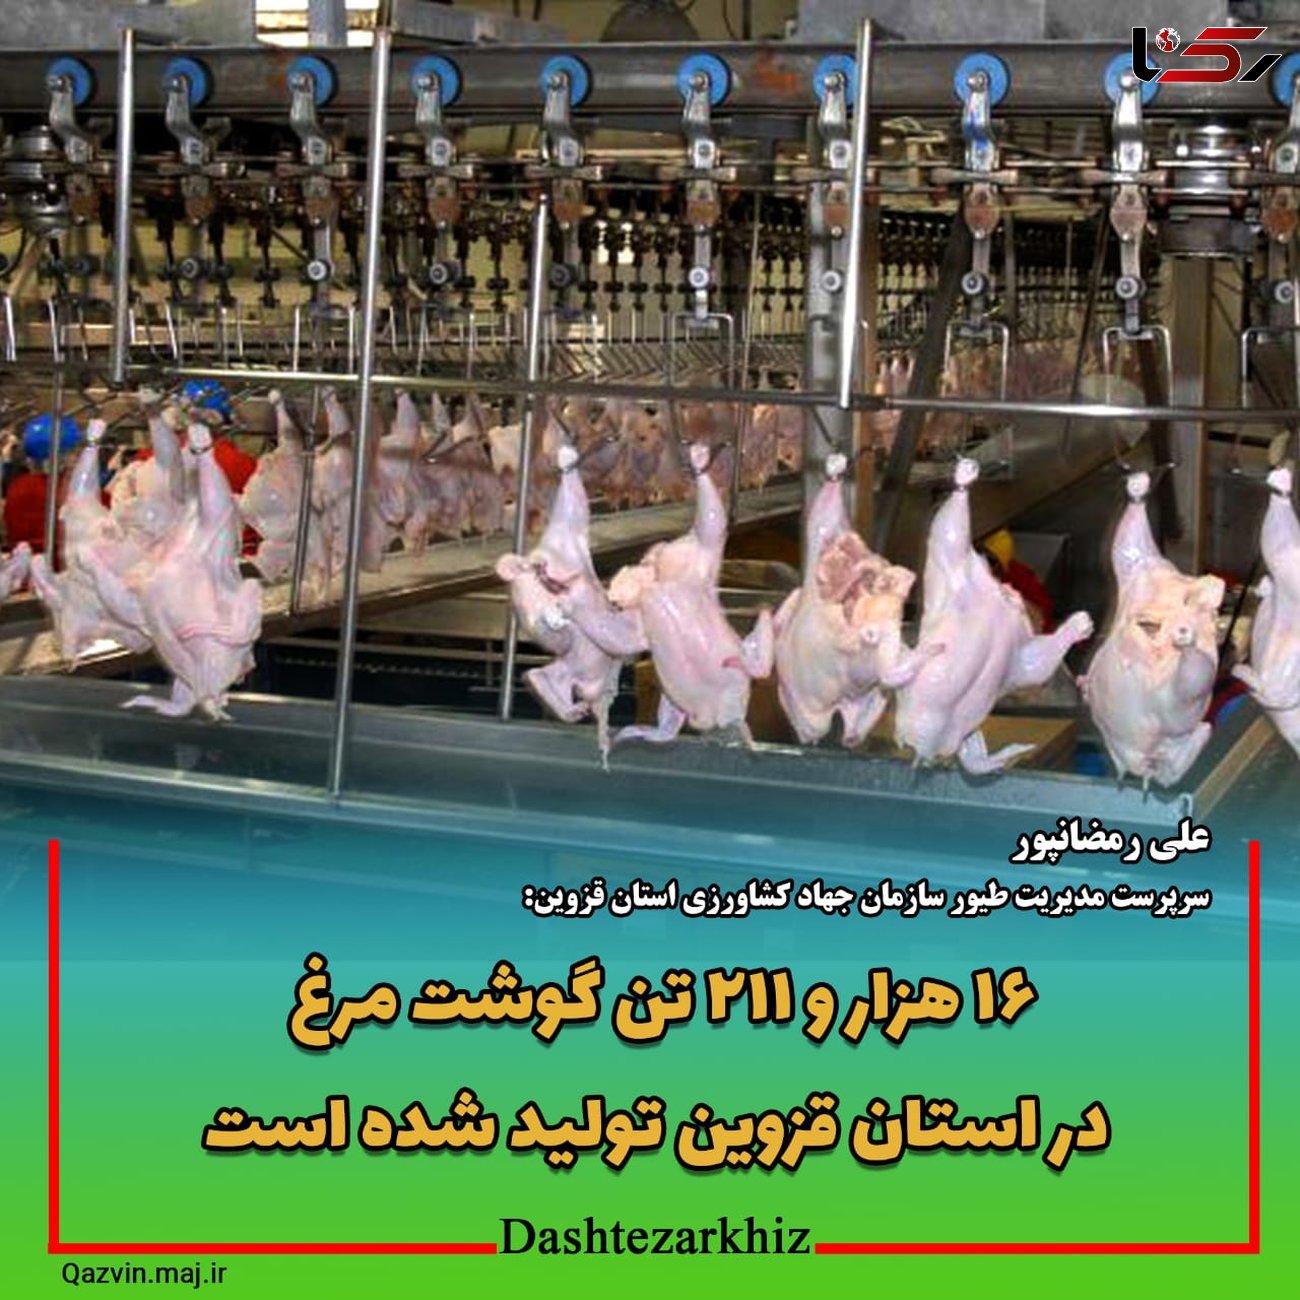  ۱۶ هزار و ۲۱۱ تن گوشت مرغ در استان قزوین تولید شده است